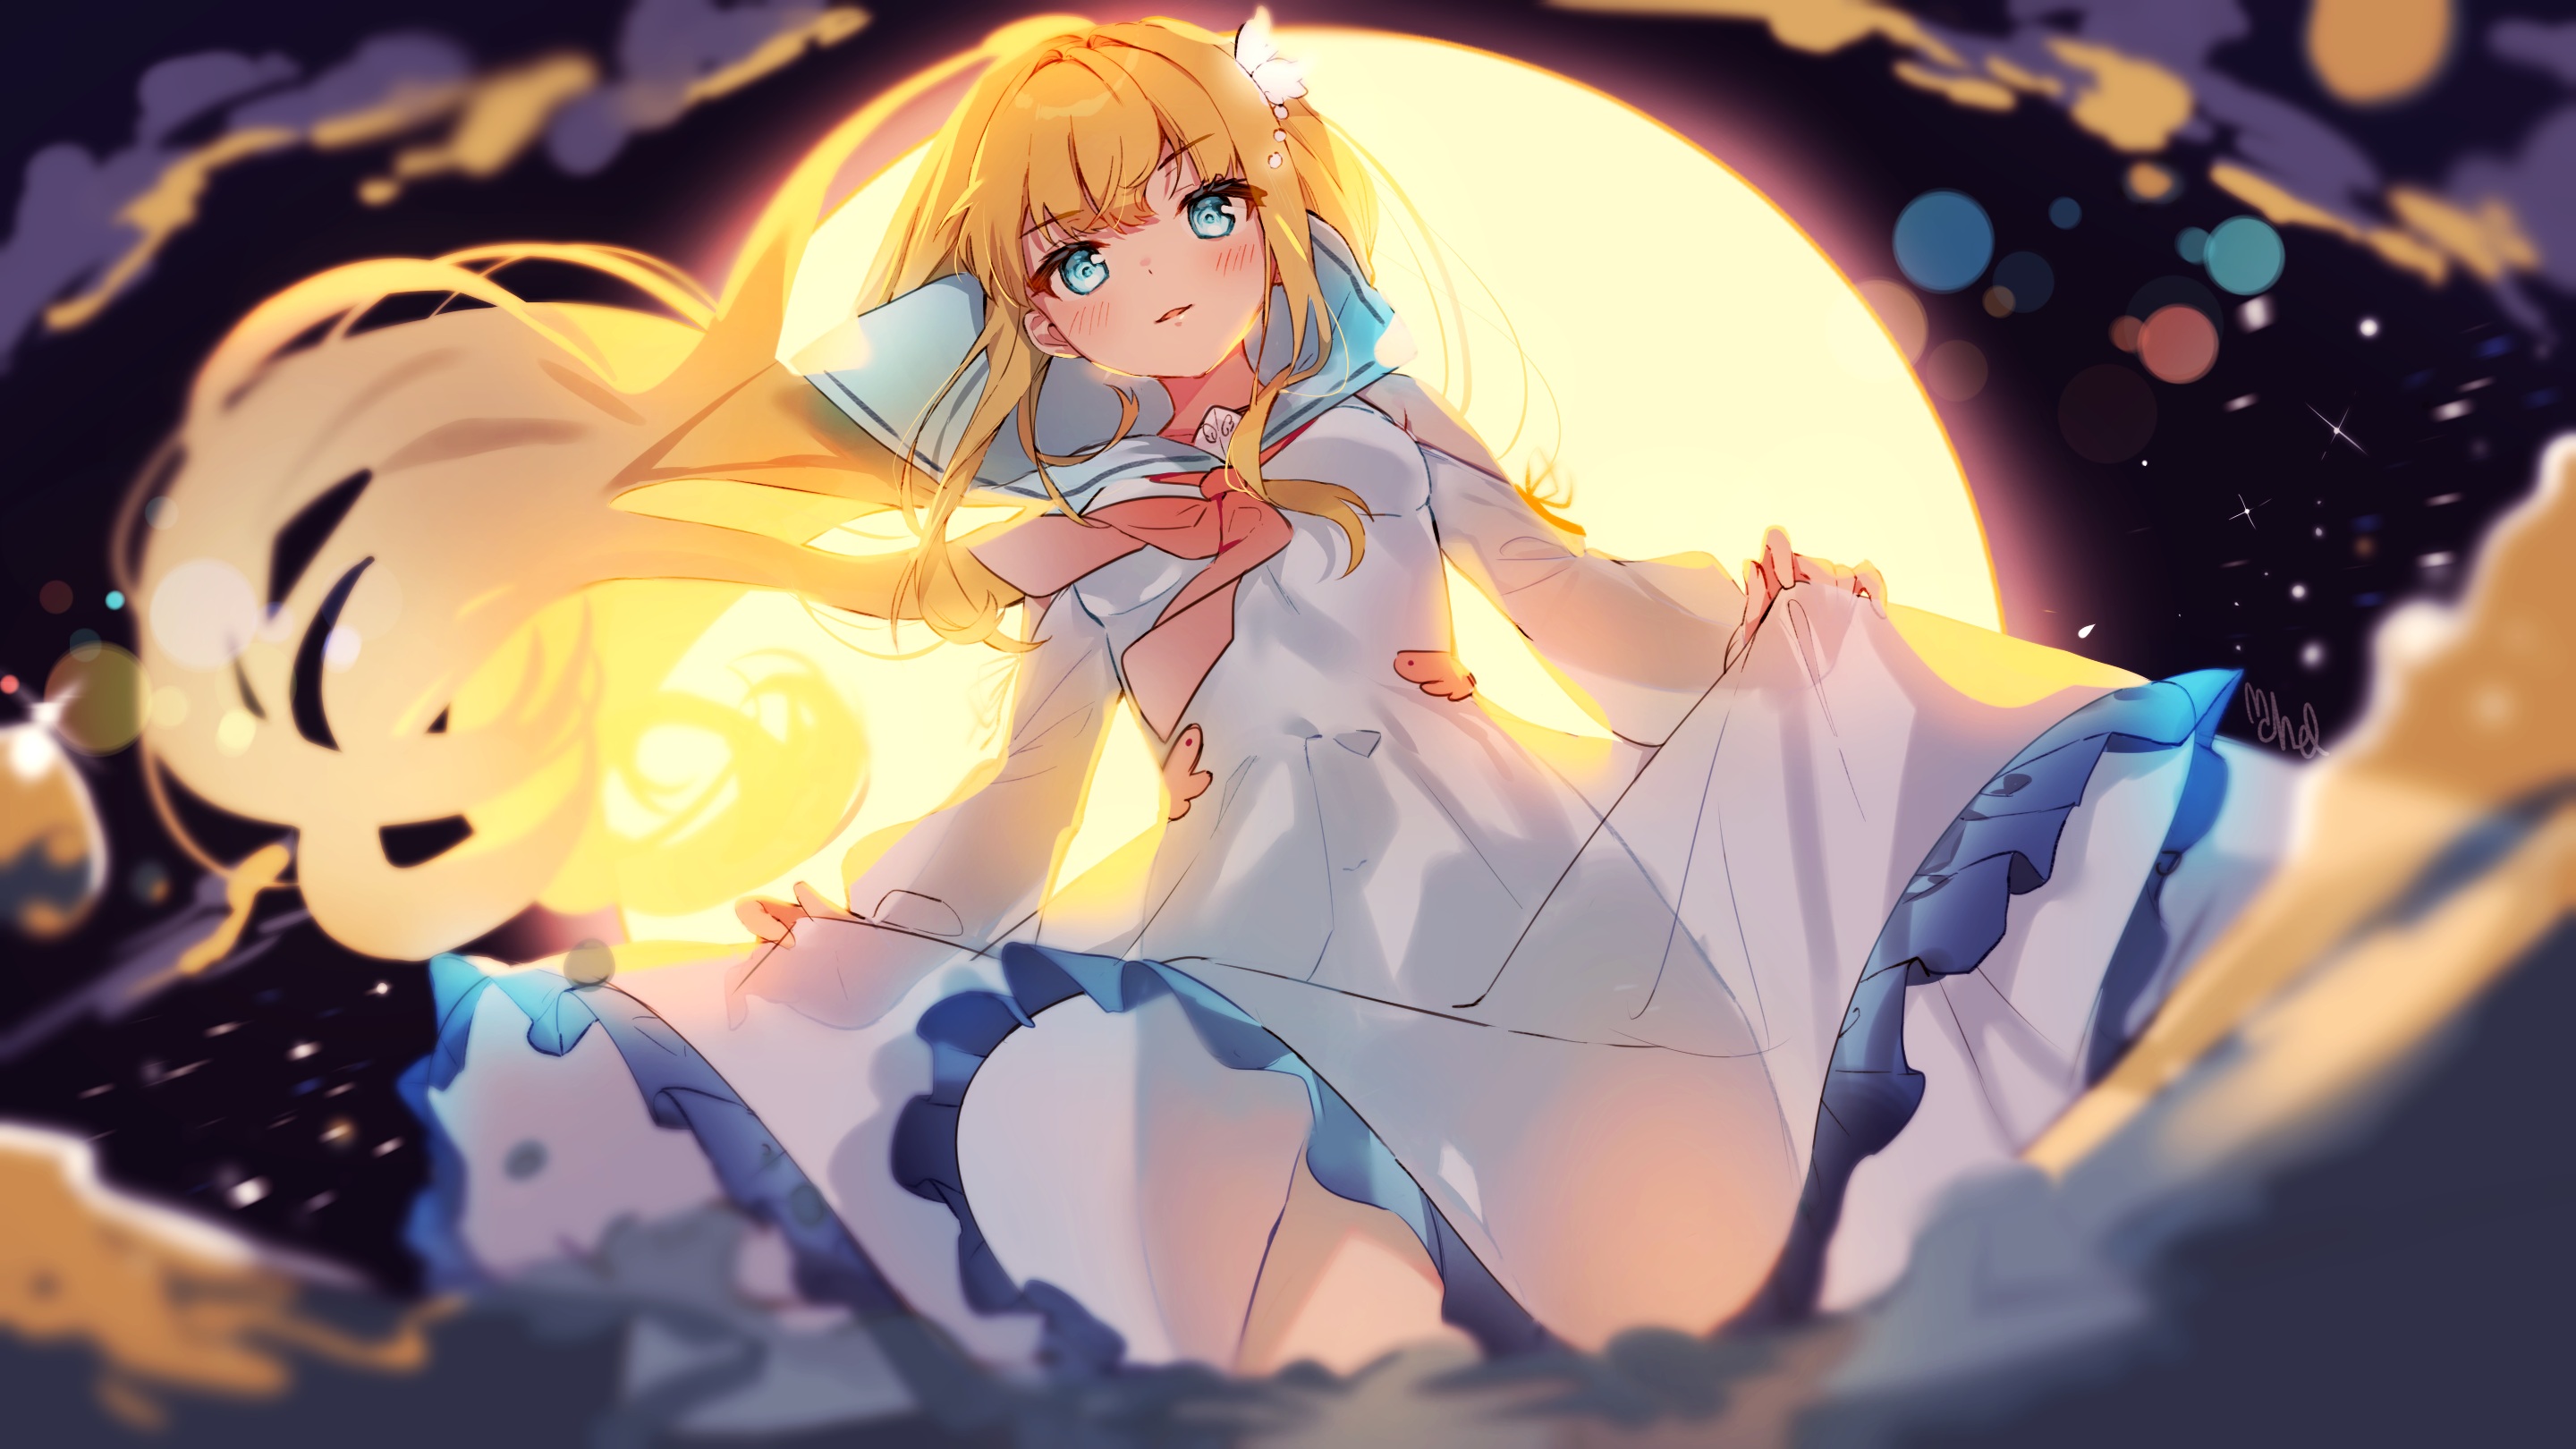 Anime Anime Girls Cheli Artwork Blonde Blue Eyes Dress 2880x1620